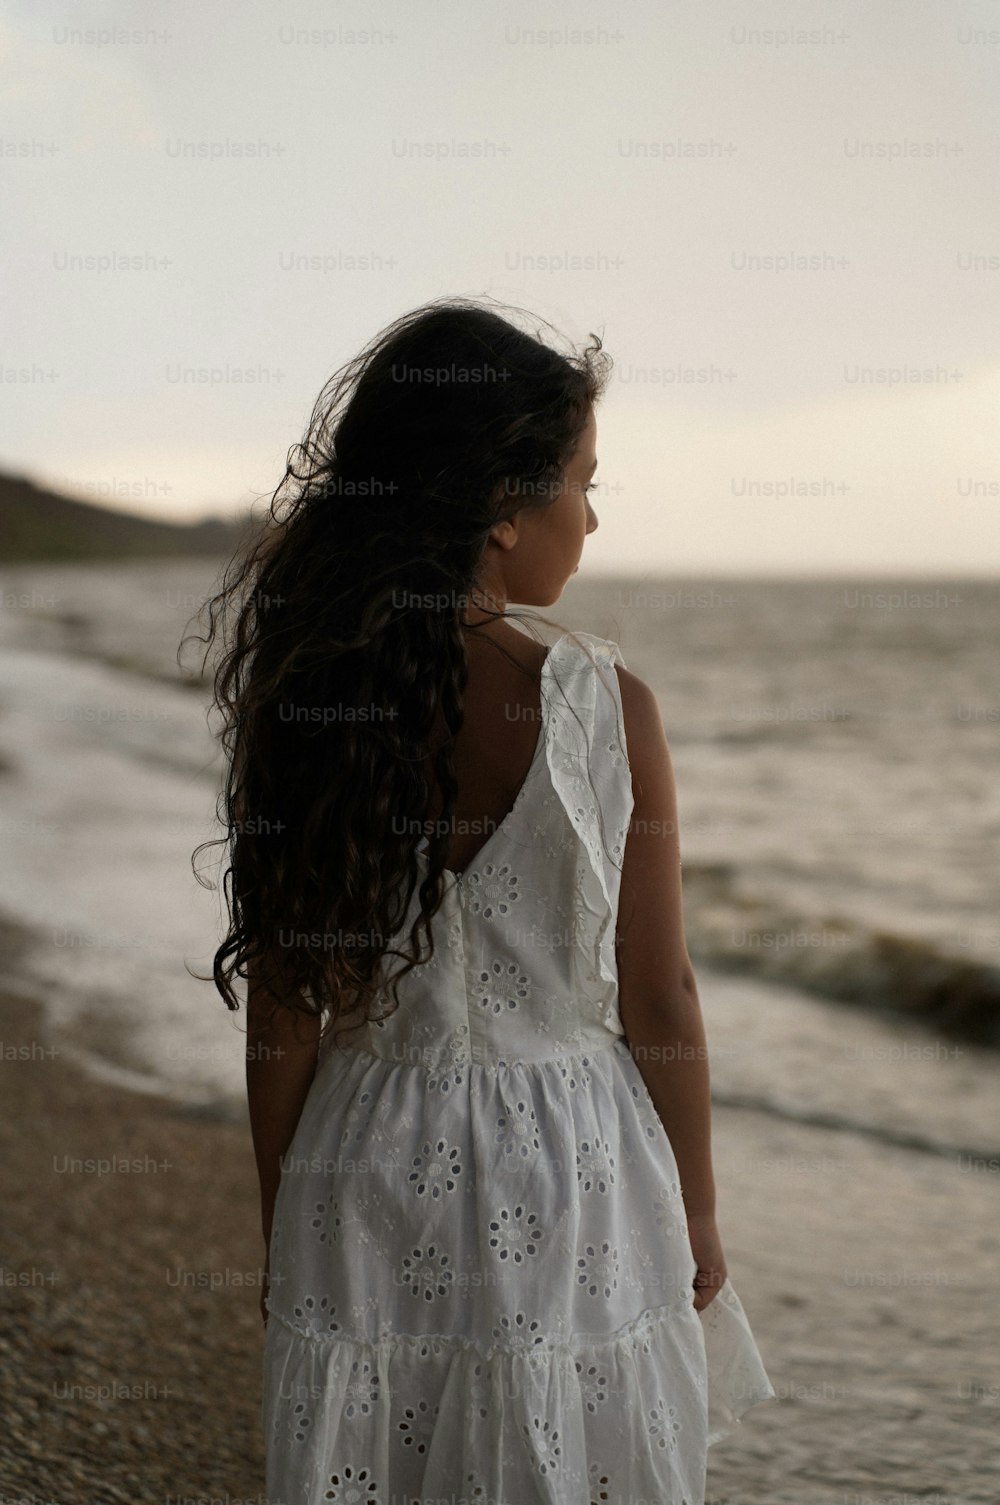 una chica con un vestido blanco caminando por la playa